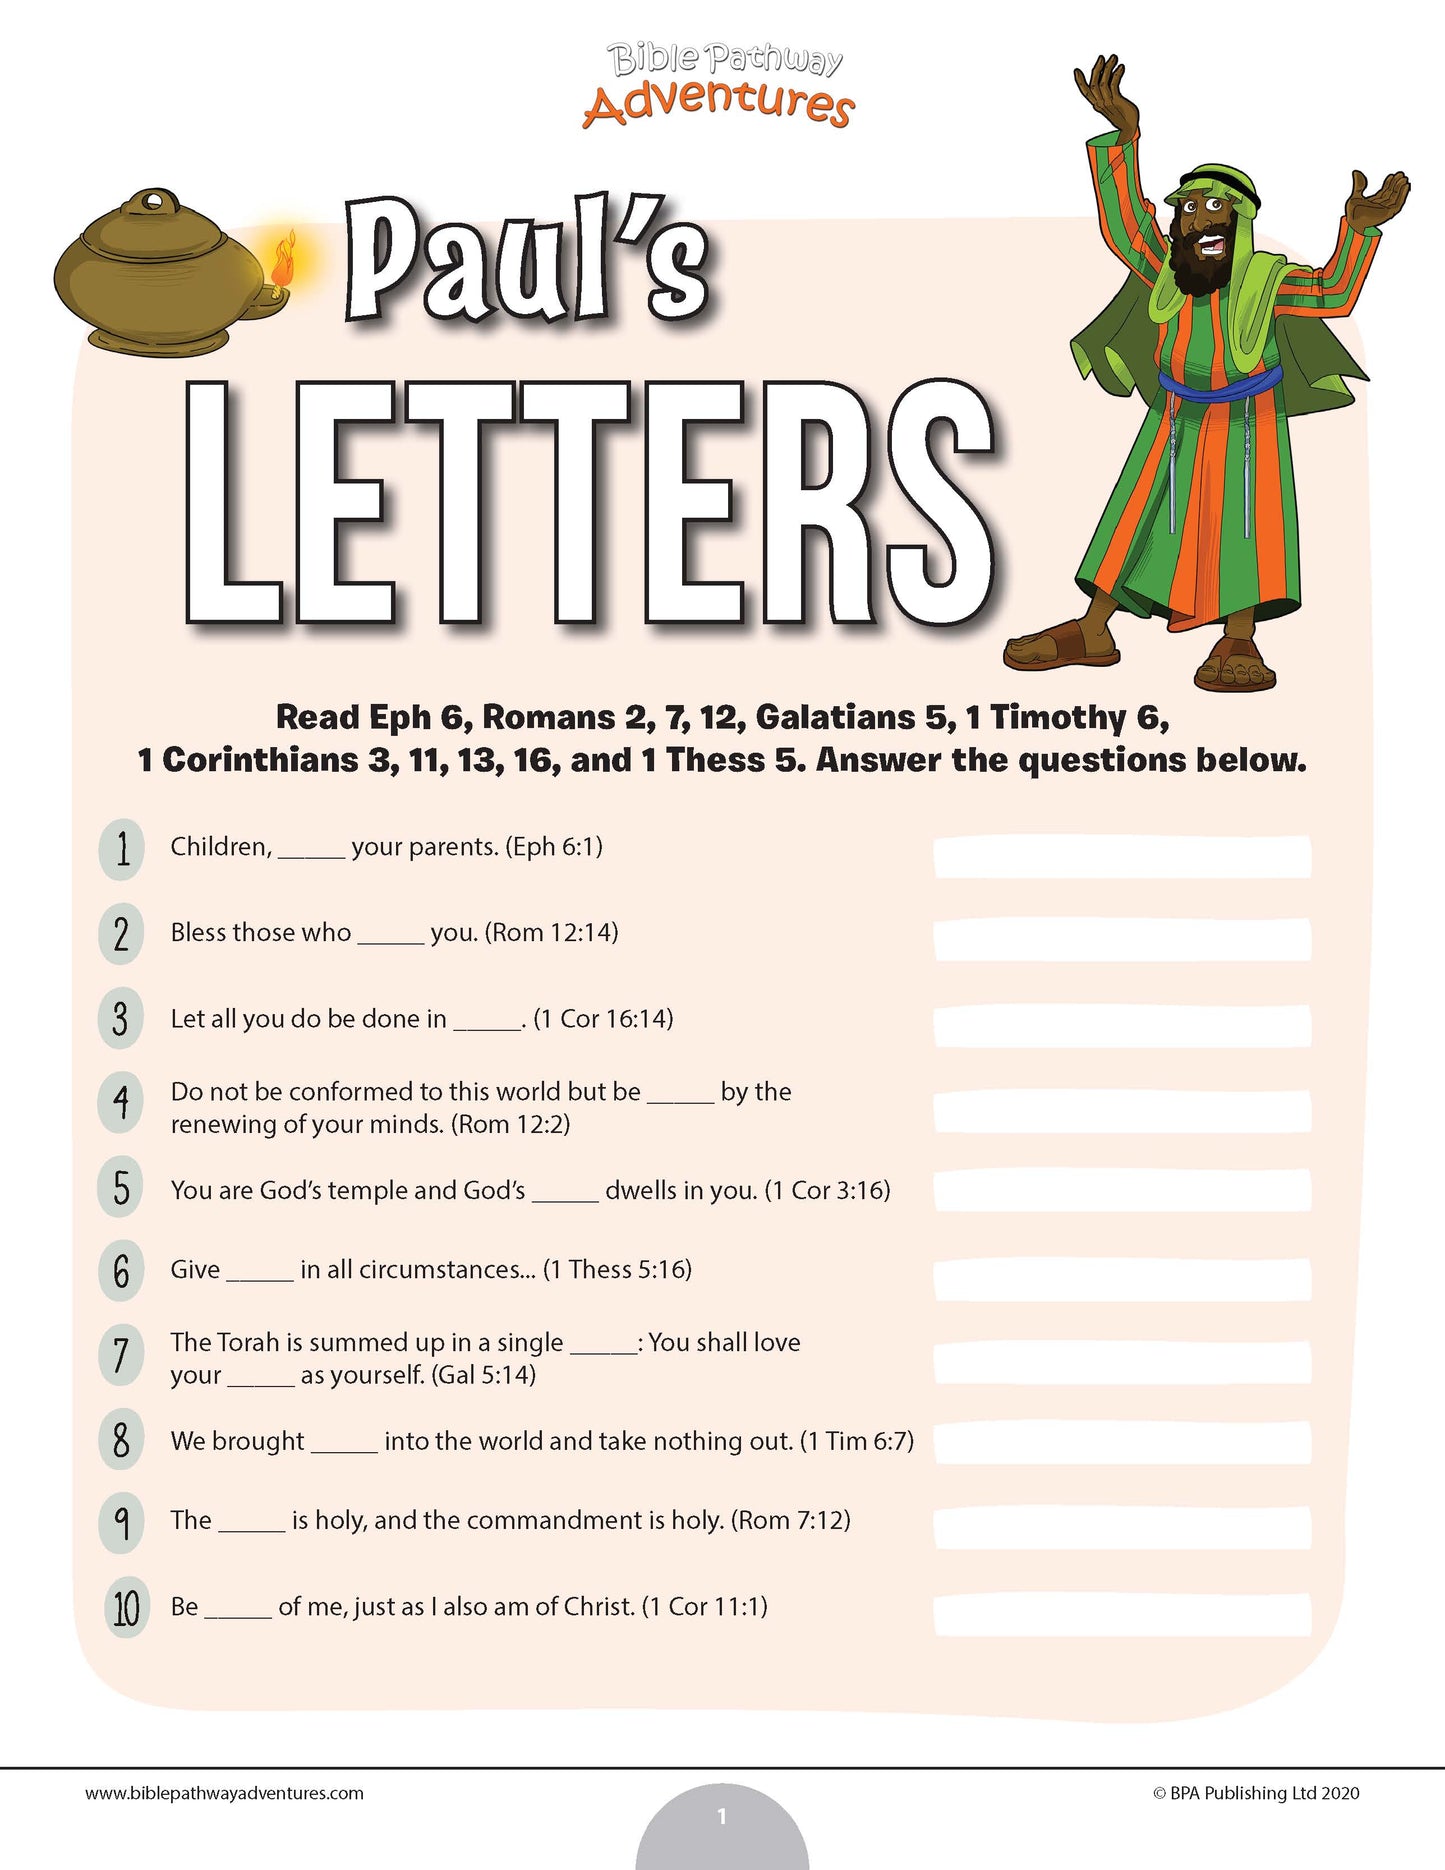 Paul’s Letters quiz (PDF)